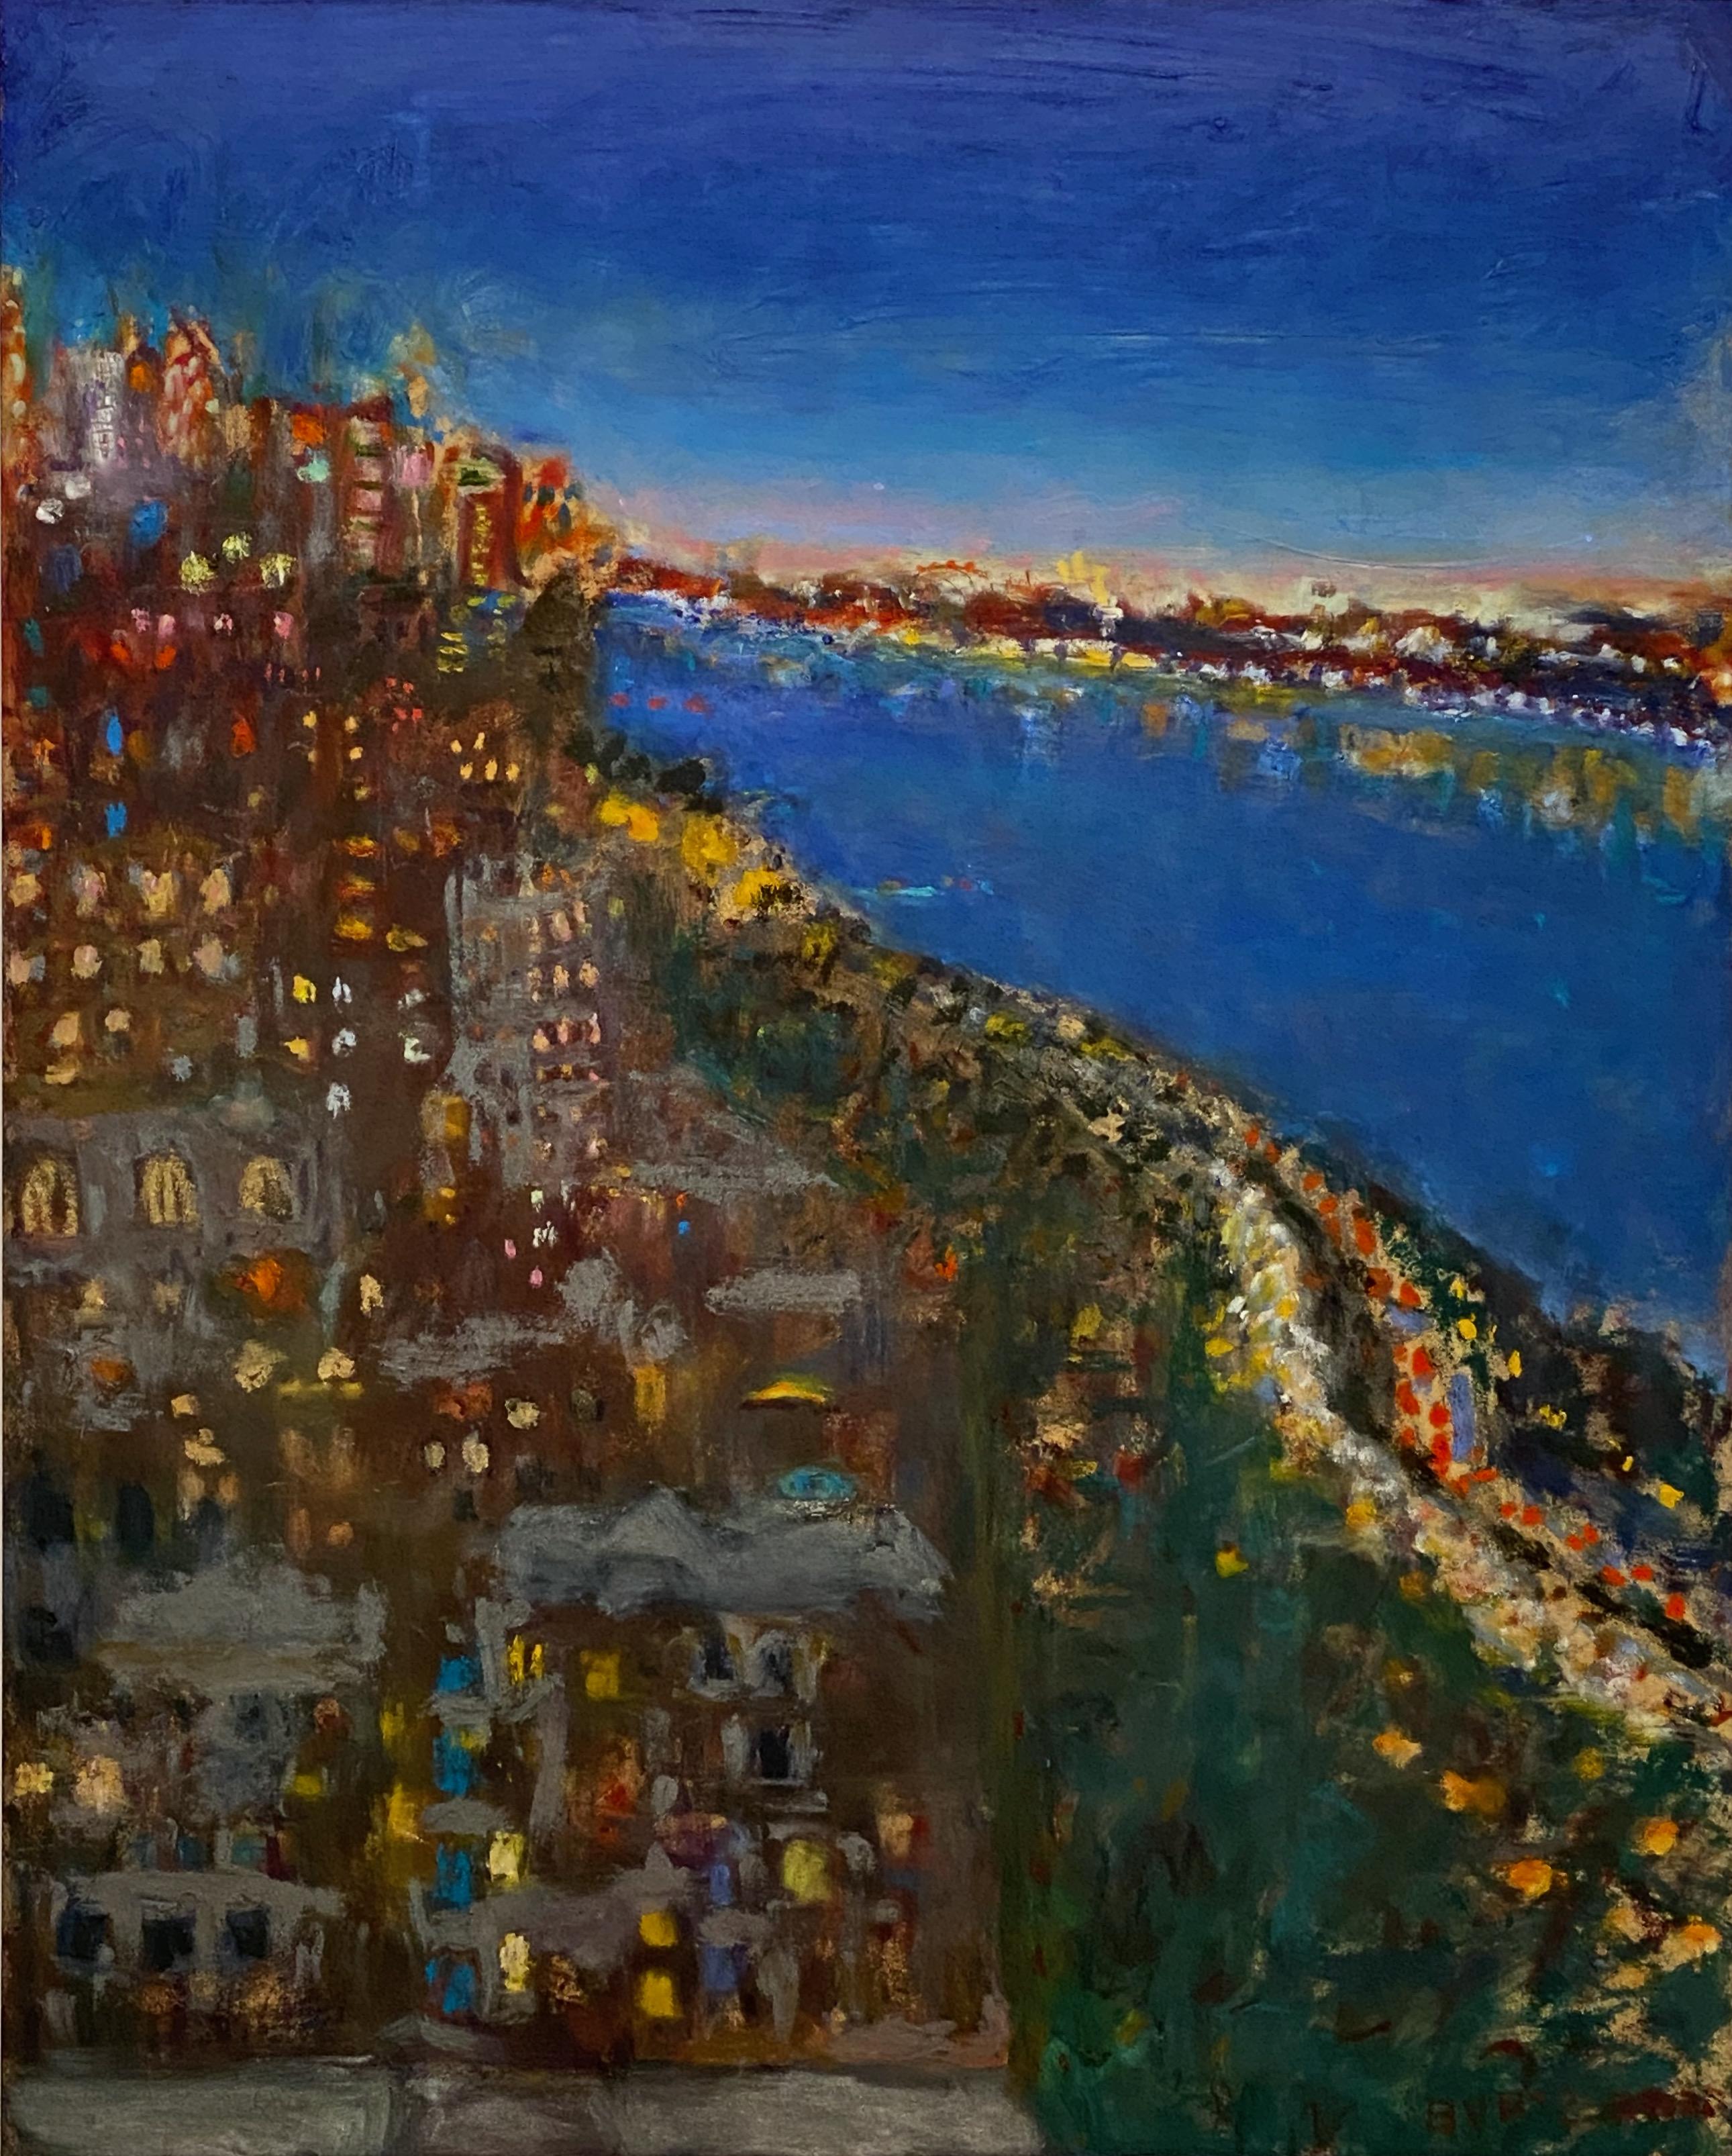 New York, New York (Nightfall) - Painting by Tracy Burtz